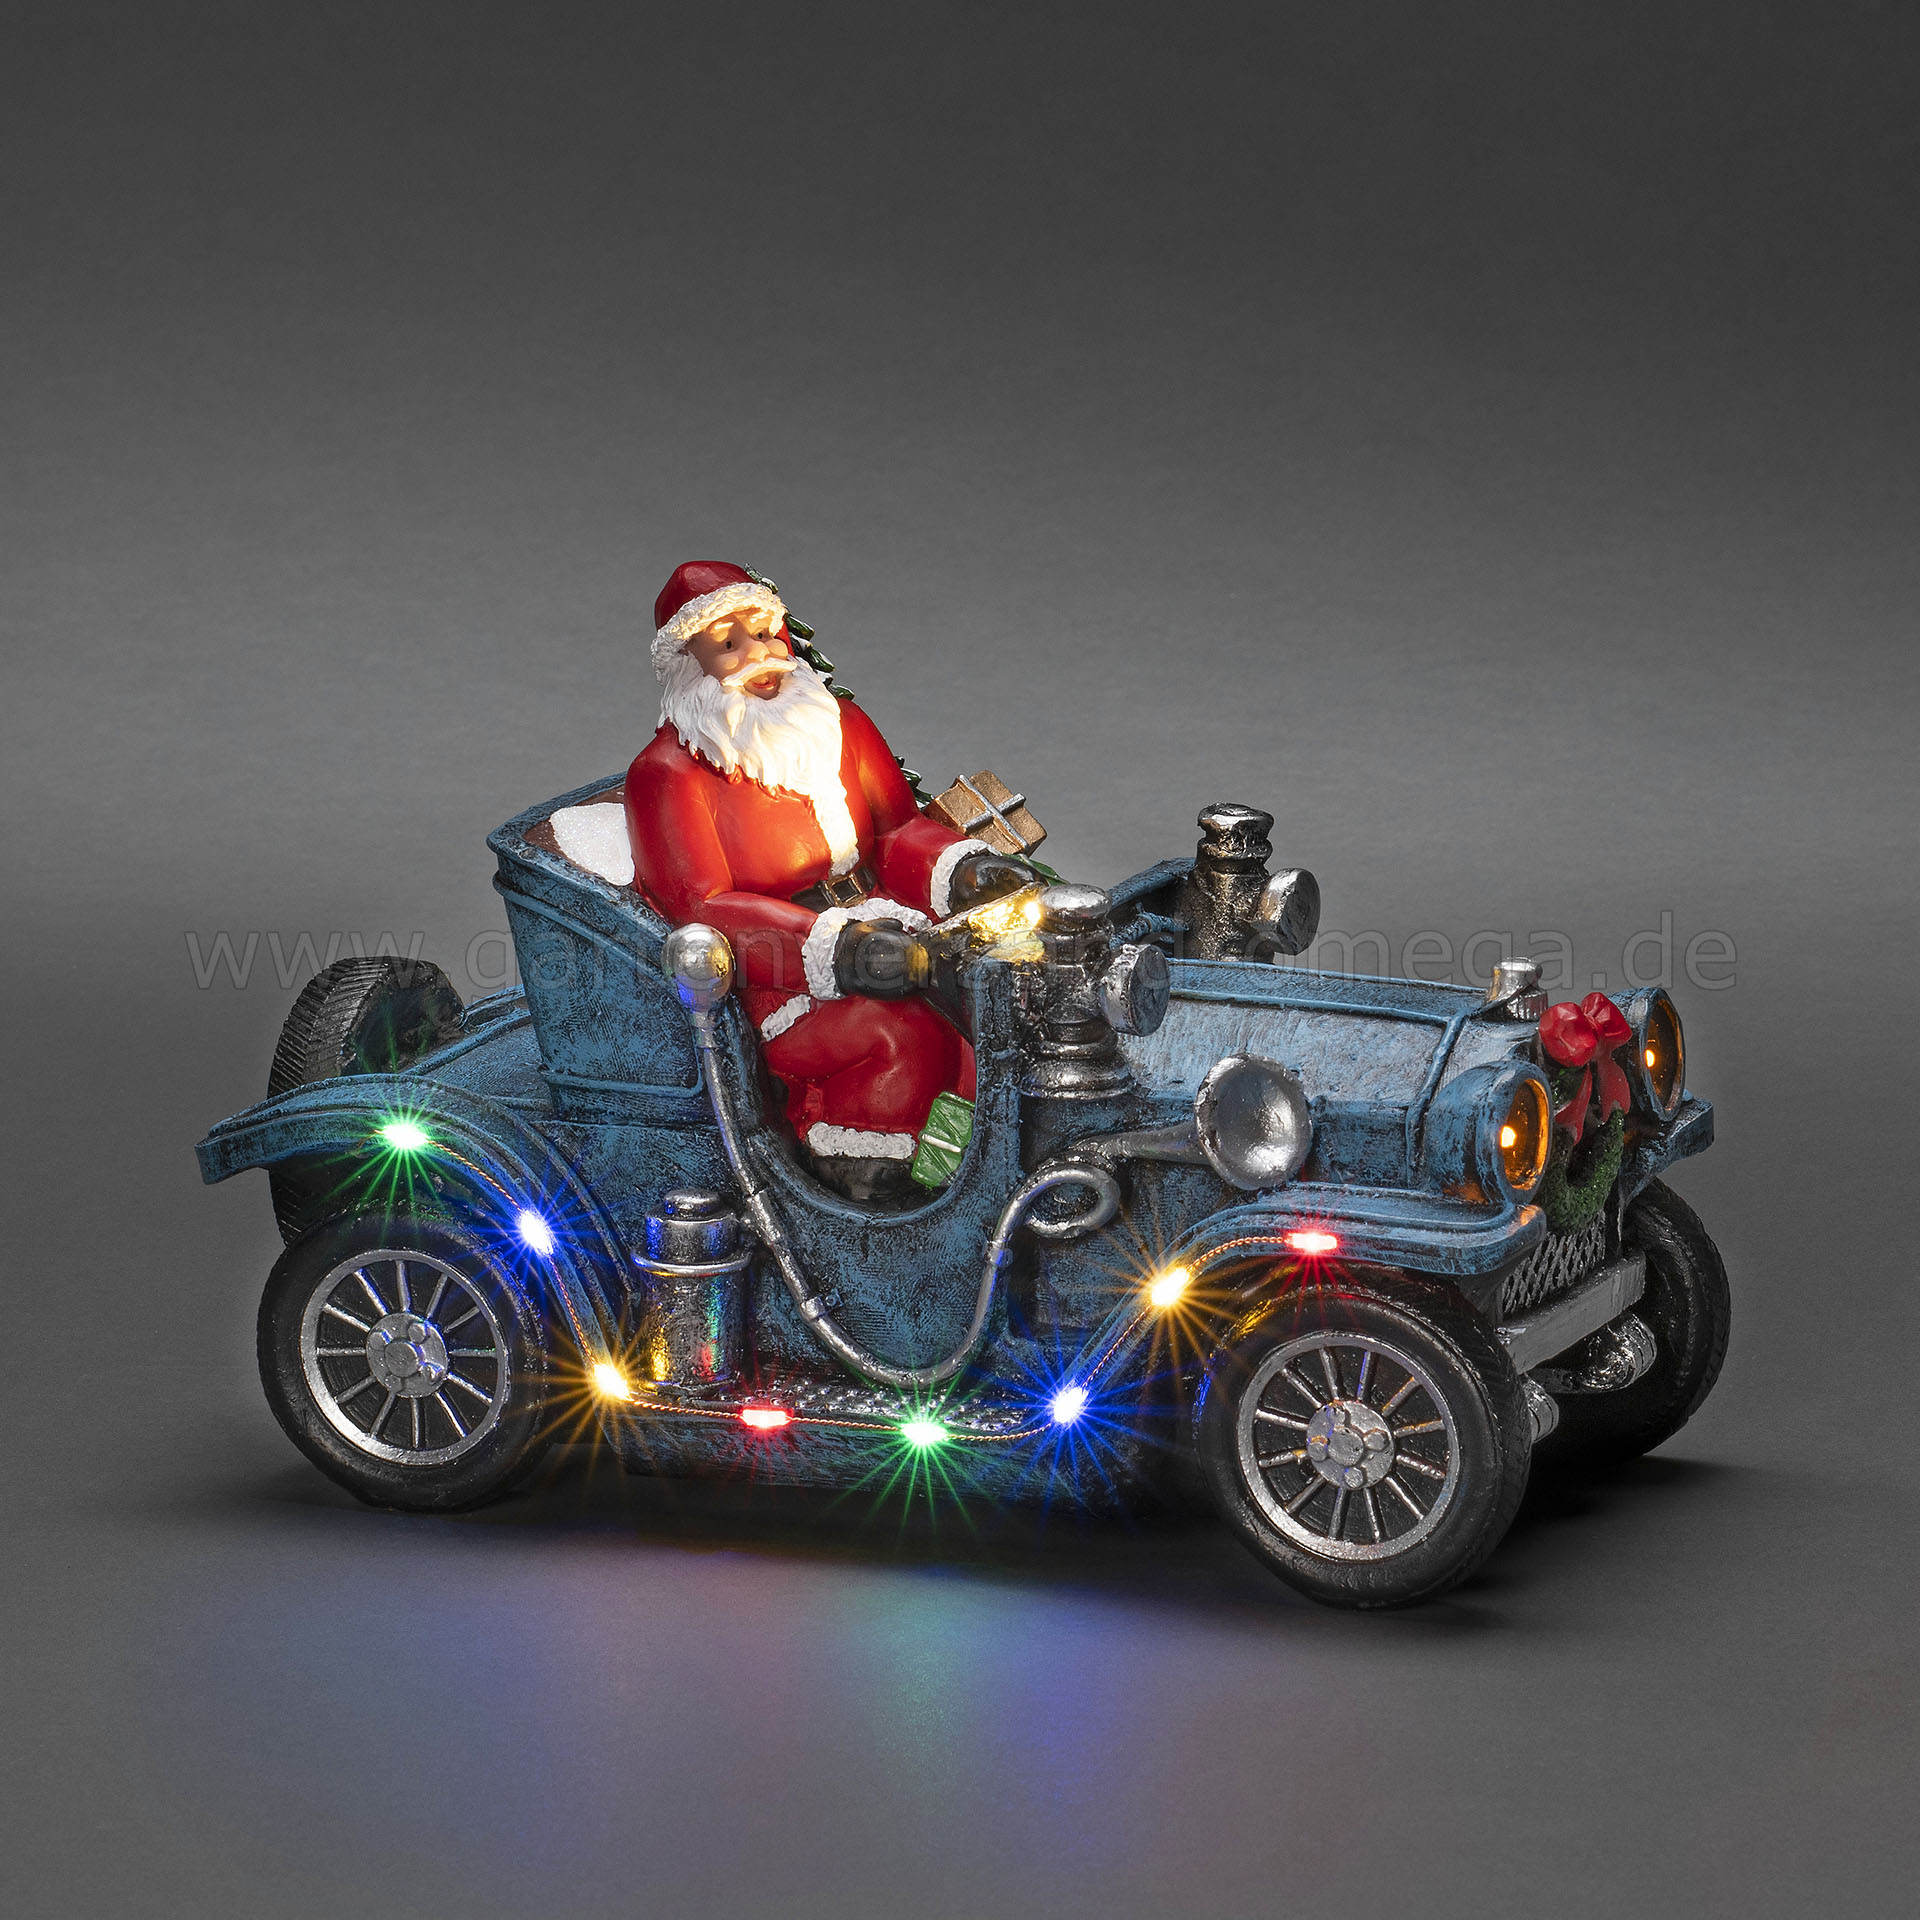 LED-Szenerie Weihnachtsmann im Auto - LED Auto Weihnachtsmann,  Weihnachtsdeko Auto, LED-Figur Auto mit Weihnachtsmann,  Schreibtischdekoration Weihnachten, Oldtimer Weihnachtsmann, Deko-Auto mit  LED-Beleuchtung